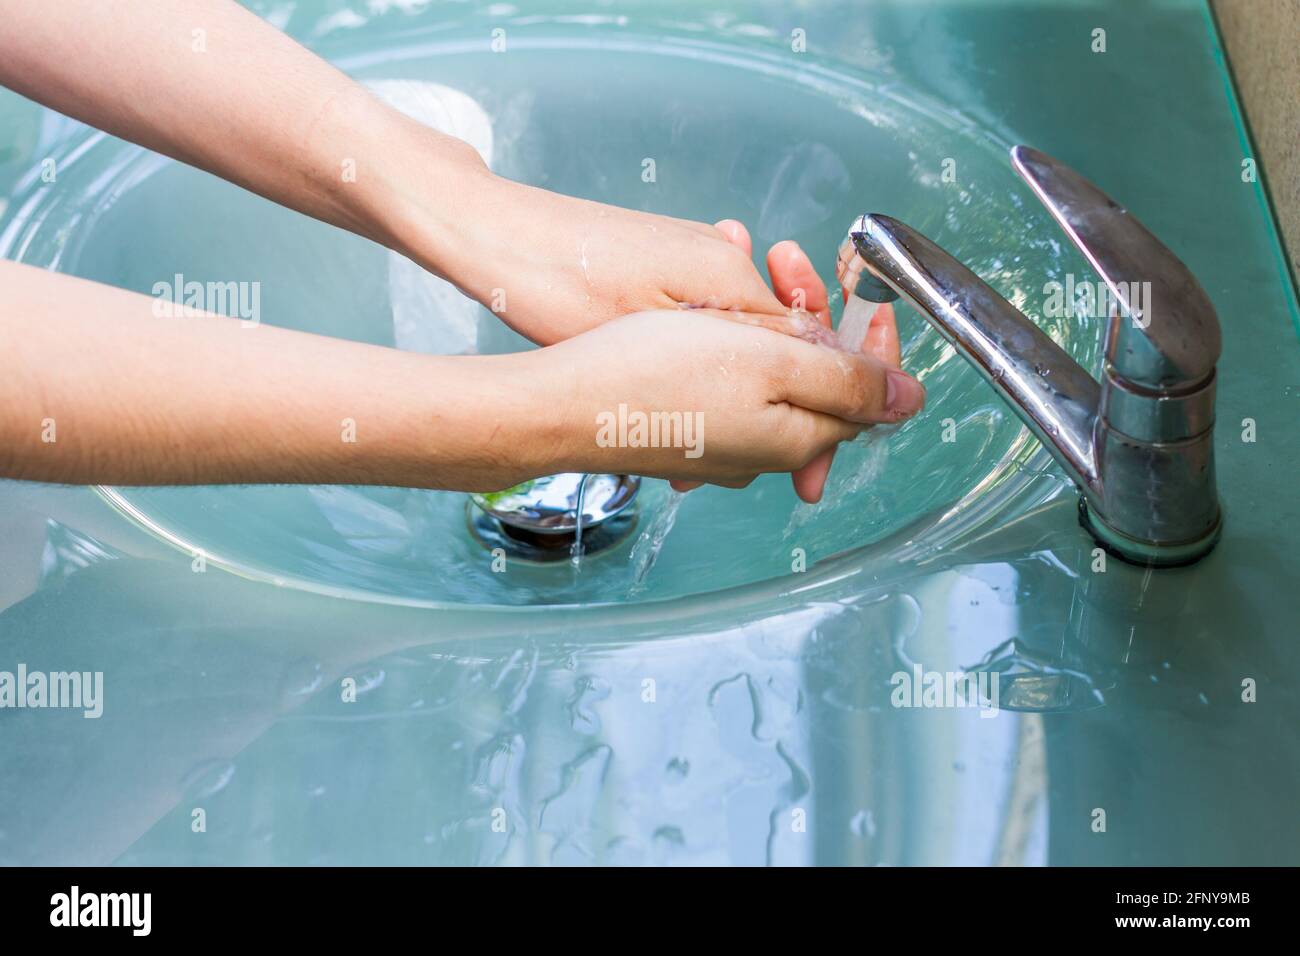 Hände waschen und den Wasserhahn aus der Tür drehen Stockfoto